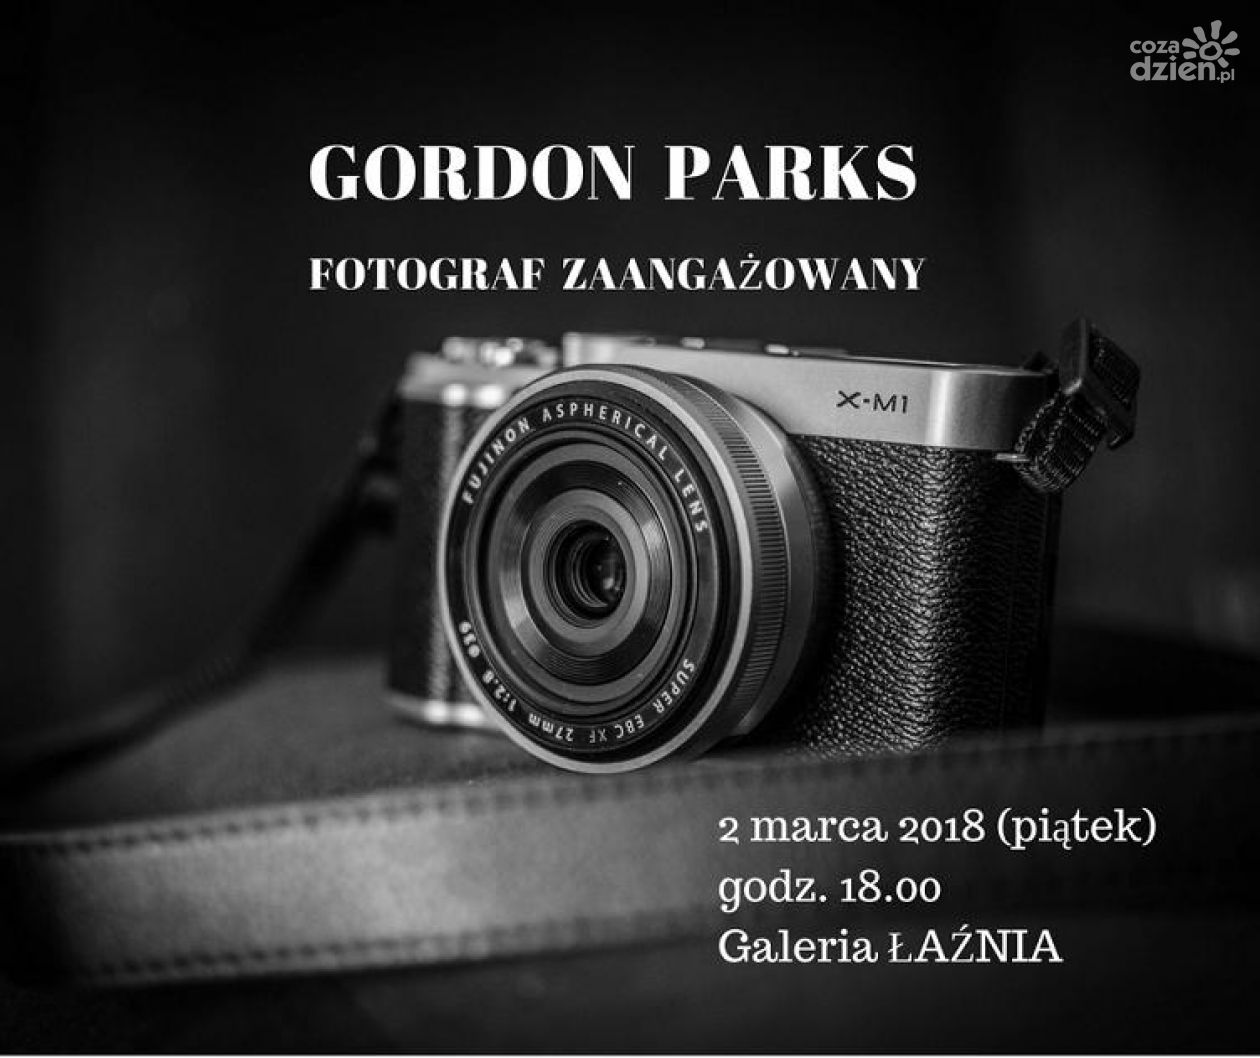 Gordon Parks – Fotograf zaangażowany